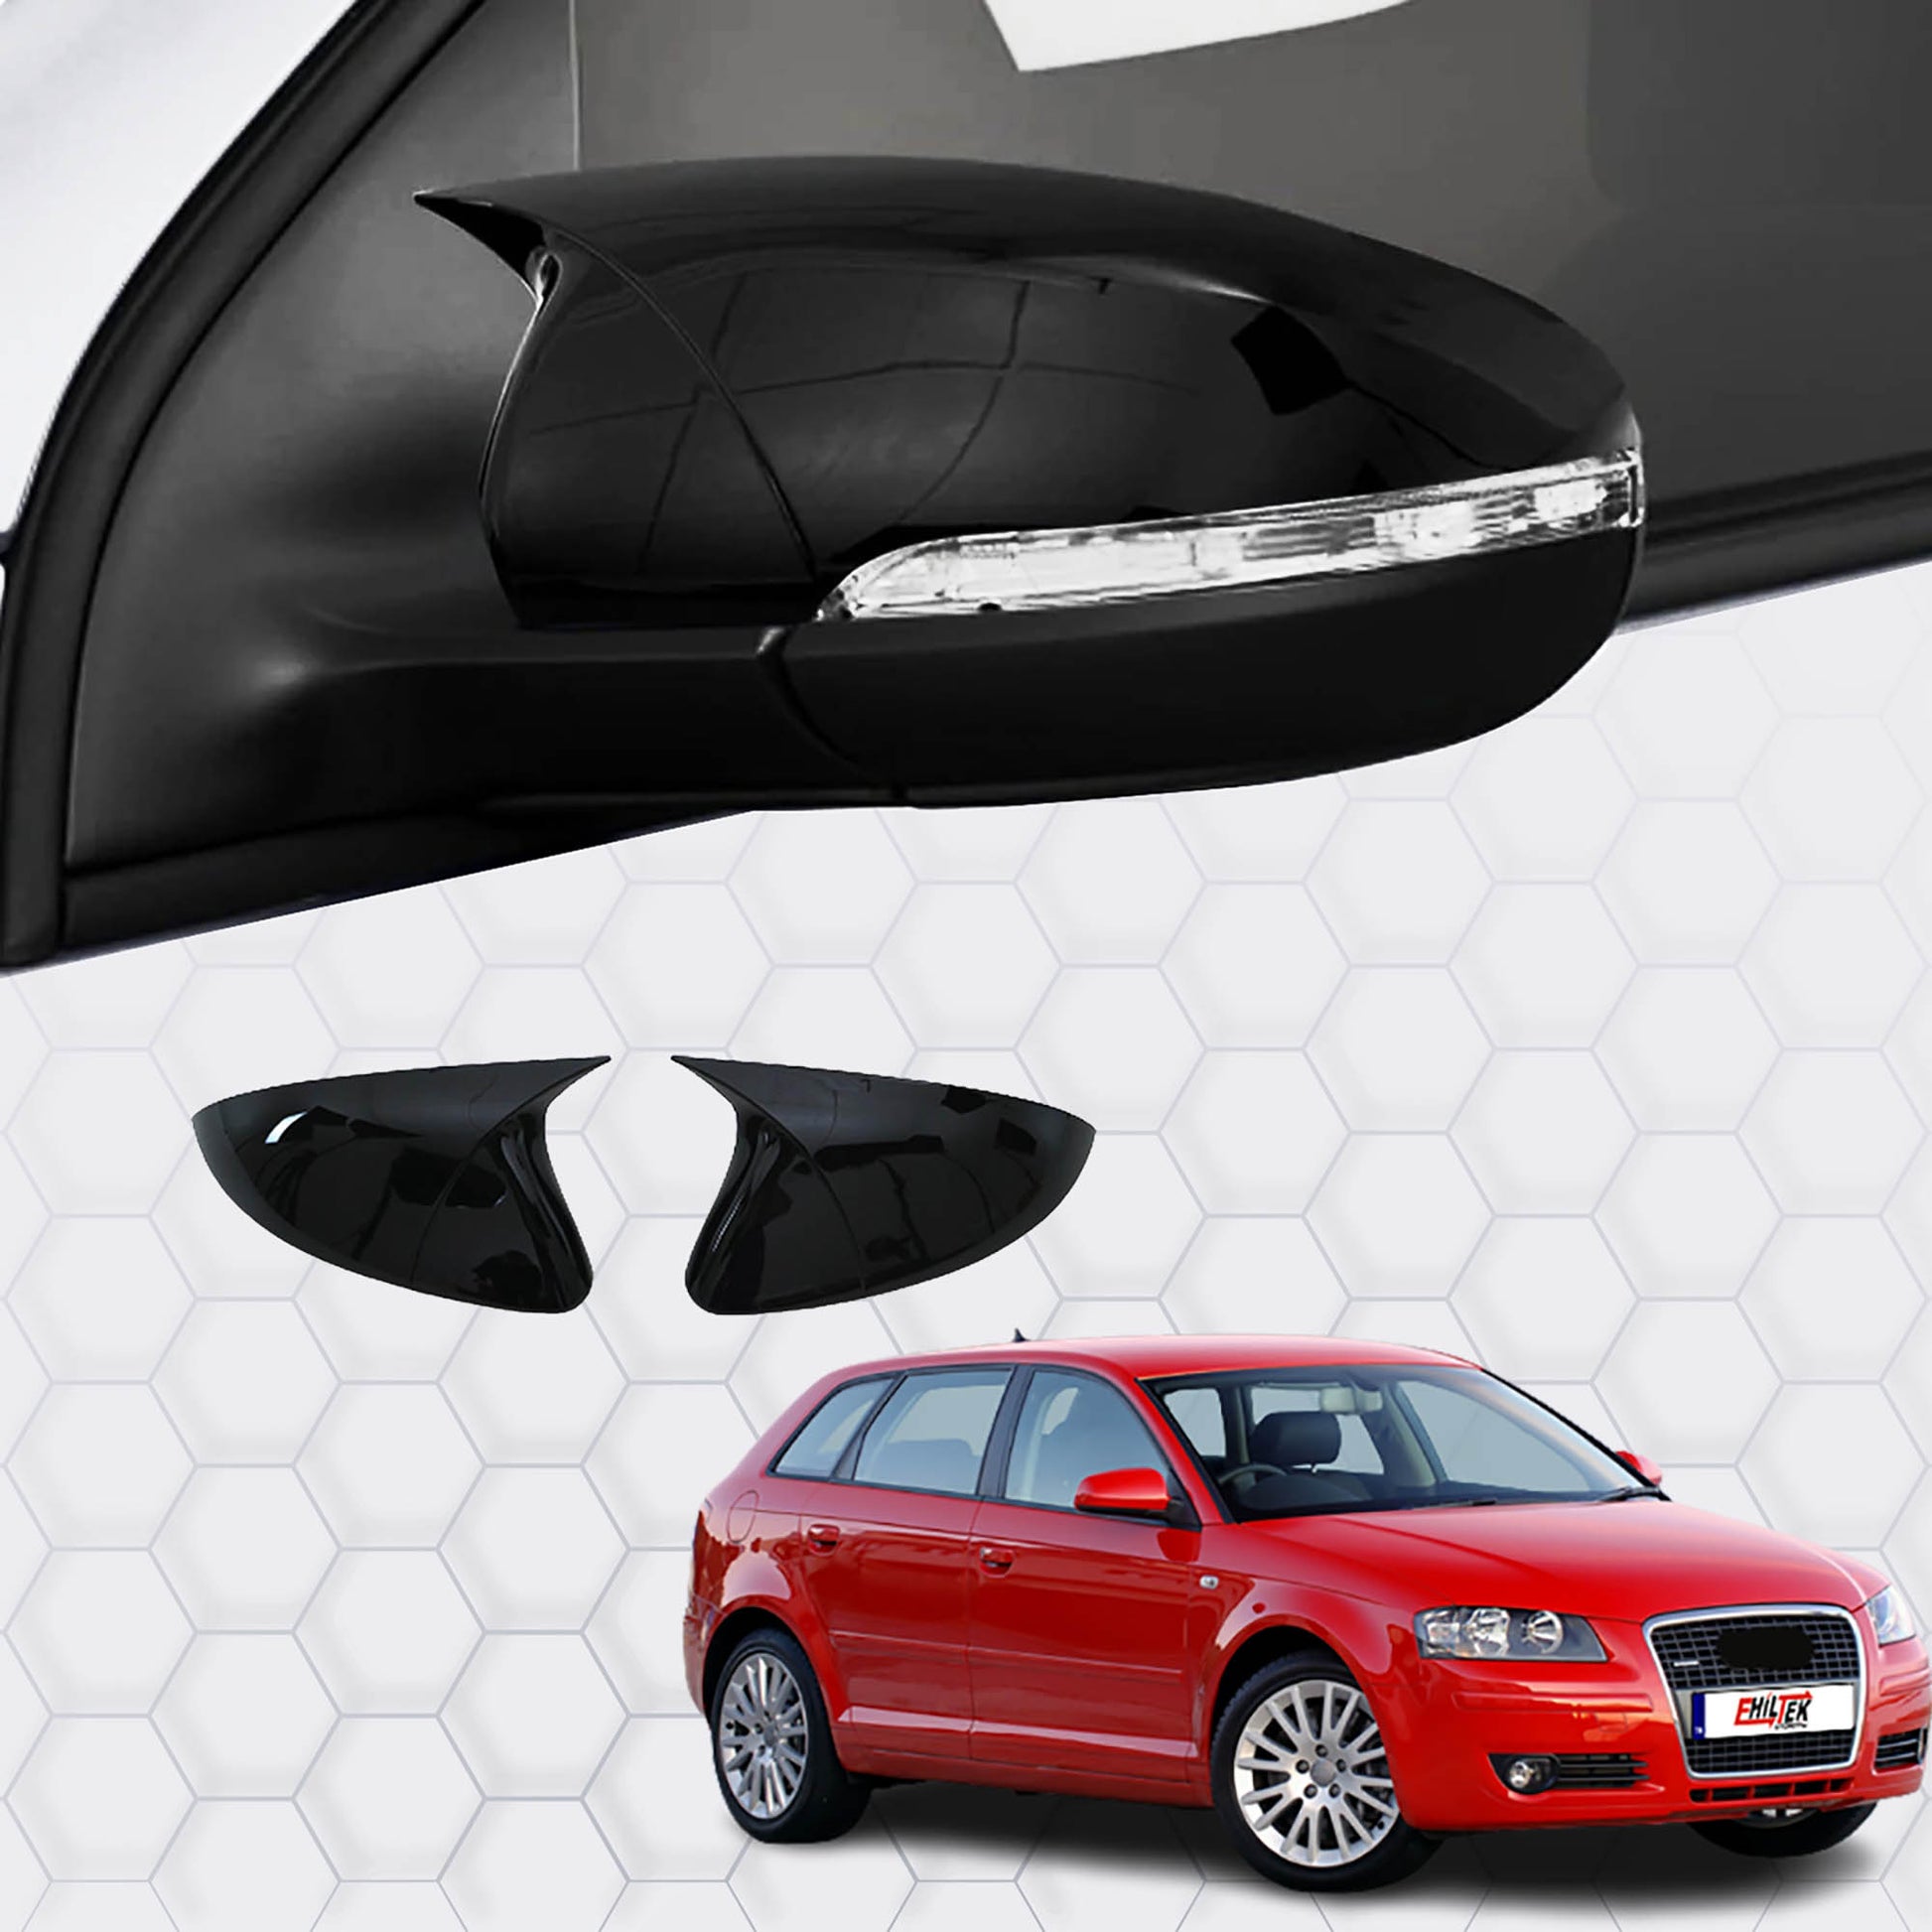 Audi A3 Yarasa Ayna Kapağı Aksesuarları Detaylı Resimleri, Kampanya bilgileri ve fiyatı - 1